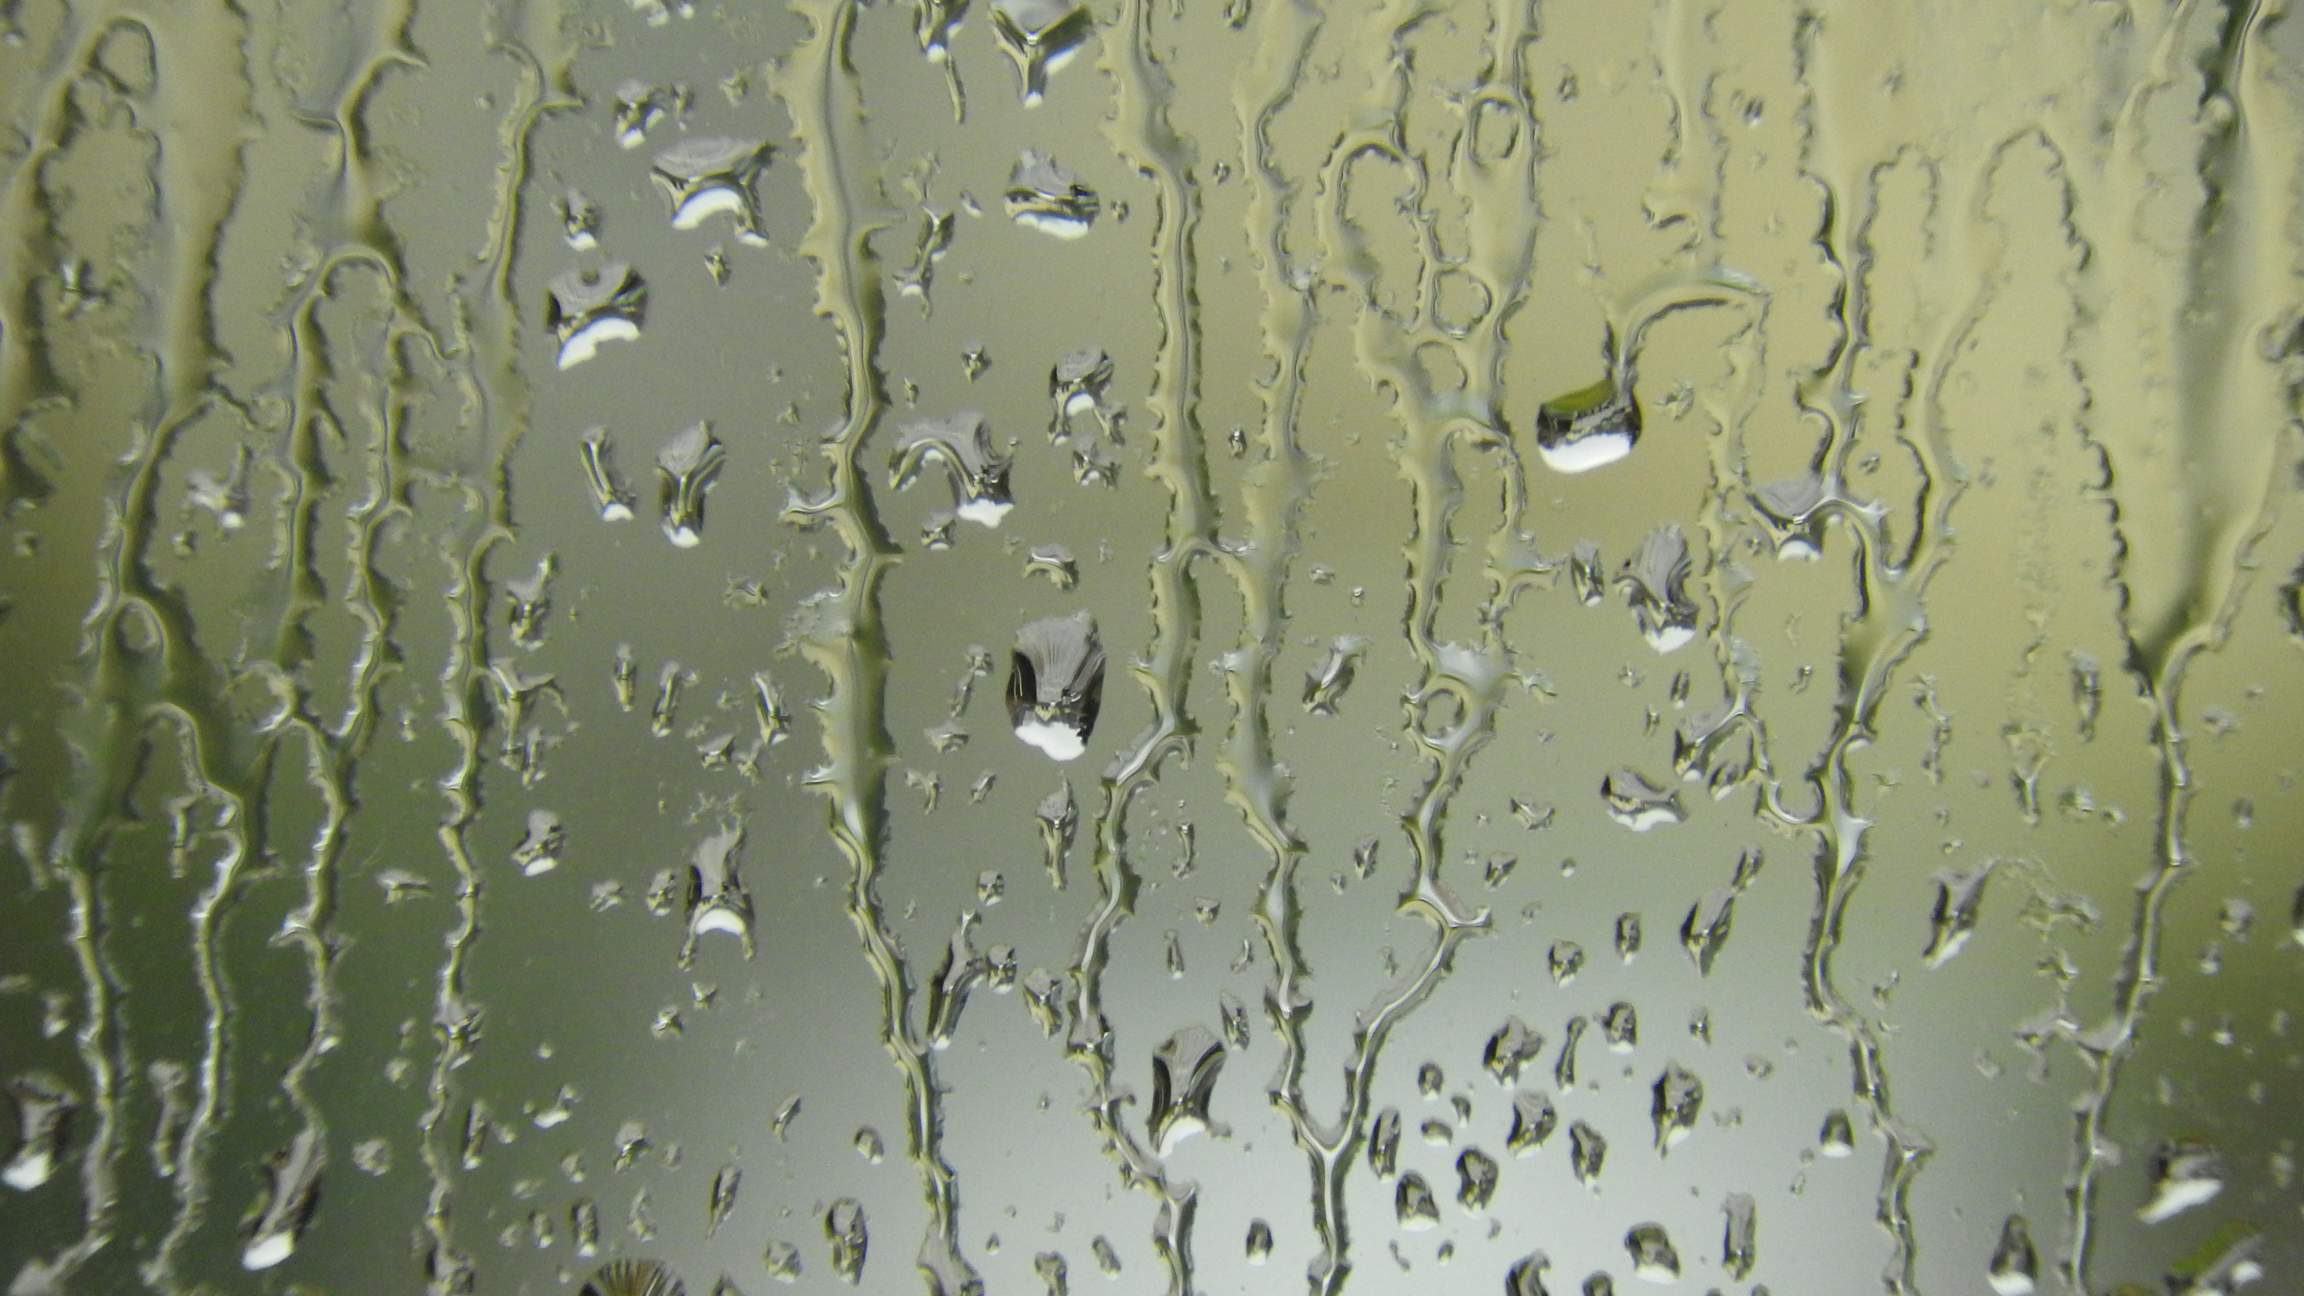 Das Bild zeigt Regentropfen auf einer Fensterscheibe. Bei genauem Hinsehen kann man in den Regentropfen das Haus am anderen Ende der Straße verkehrt herum sehen, weil die Tropfen als Linsen wirken.